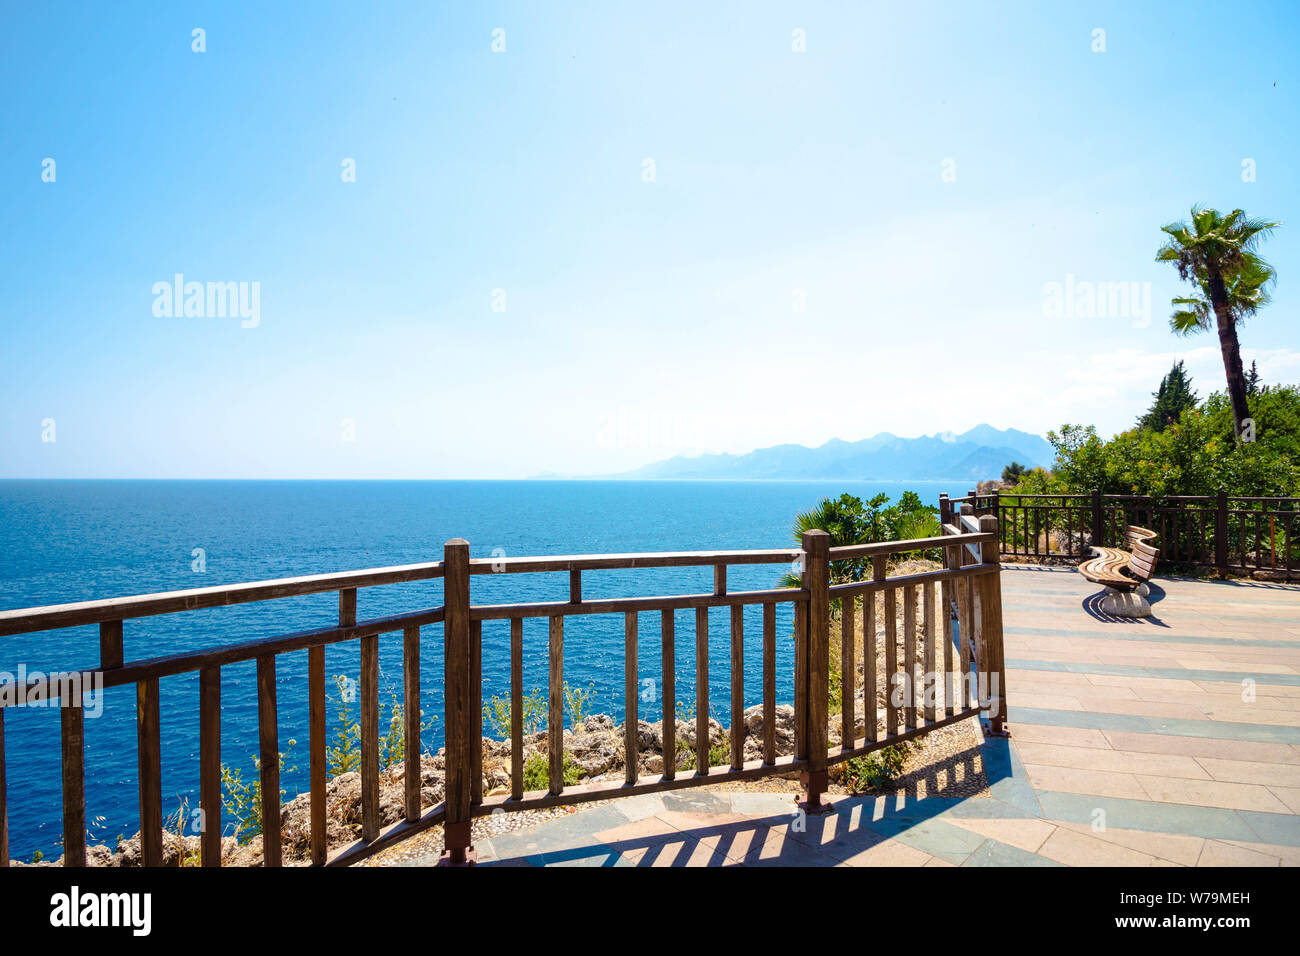 Una terrazza panoramica che si affaccia sul mare blu. Sul sito è un banco per il riposo e il tracking con una bellissima vista. Le palme crescono intorno. Foto Stock